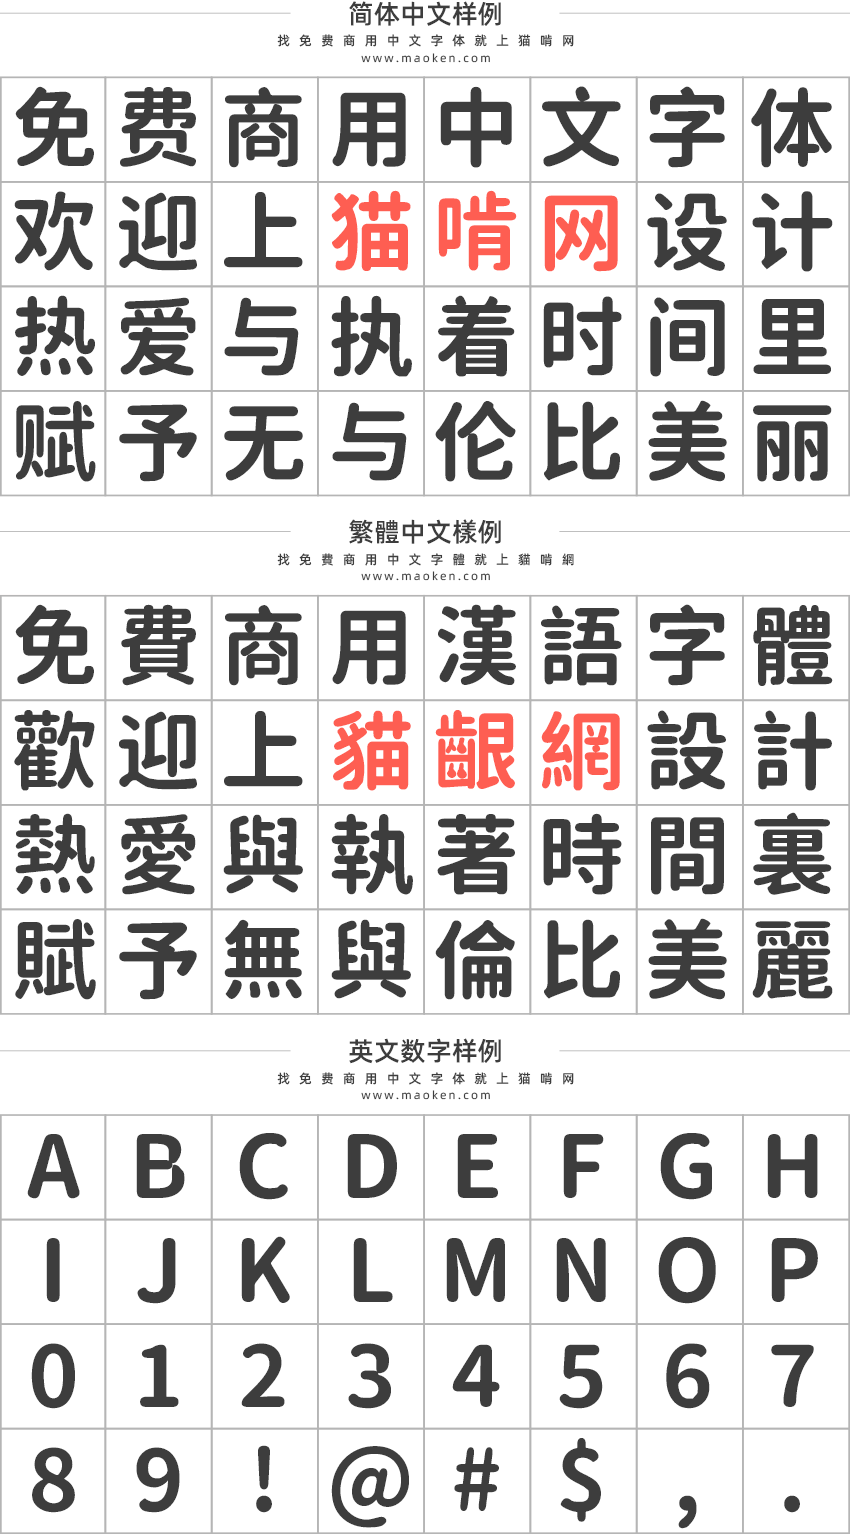 基于思源黑体的圆体字型 换掉思源柔黑体吧-猫啃网,免费商用中文字体